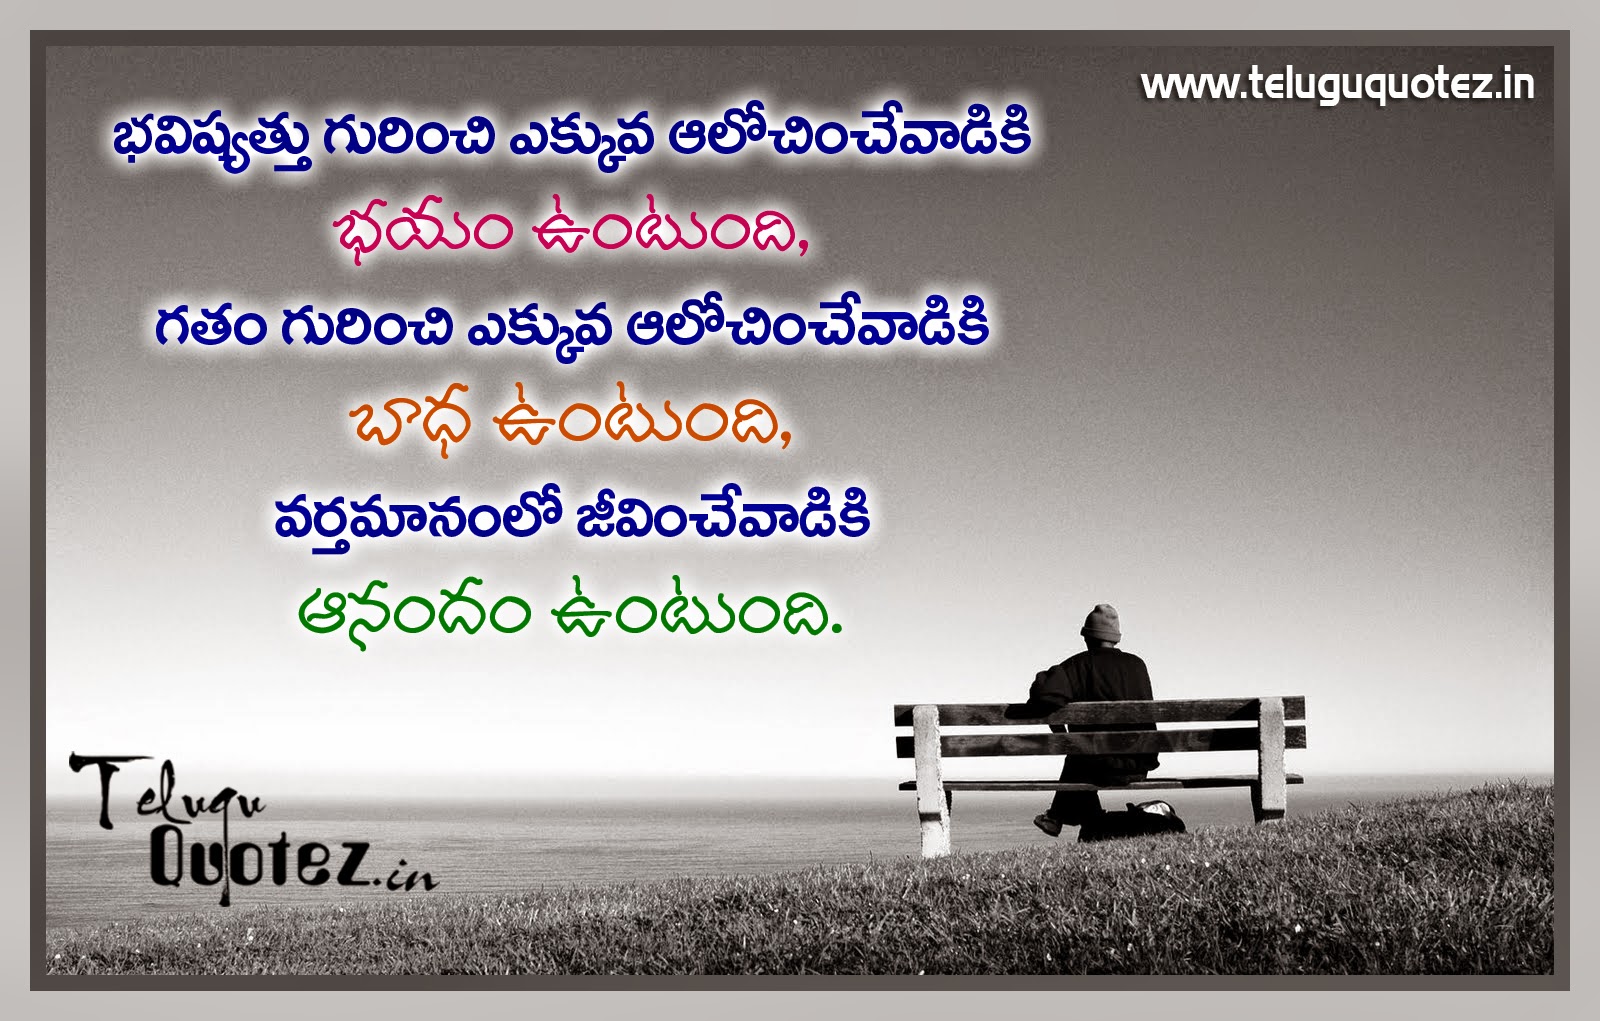 Telugu Quotes on Life Life quotes in Telugu Telugu quotes possitive telugu quotes on life best saying telugu quotes on life Beautyful life quotes in